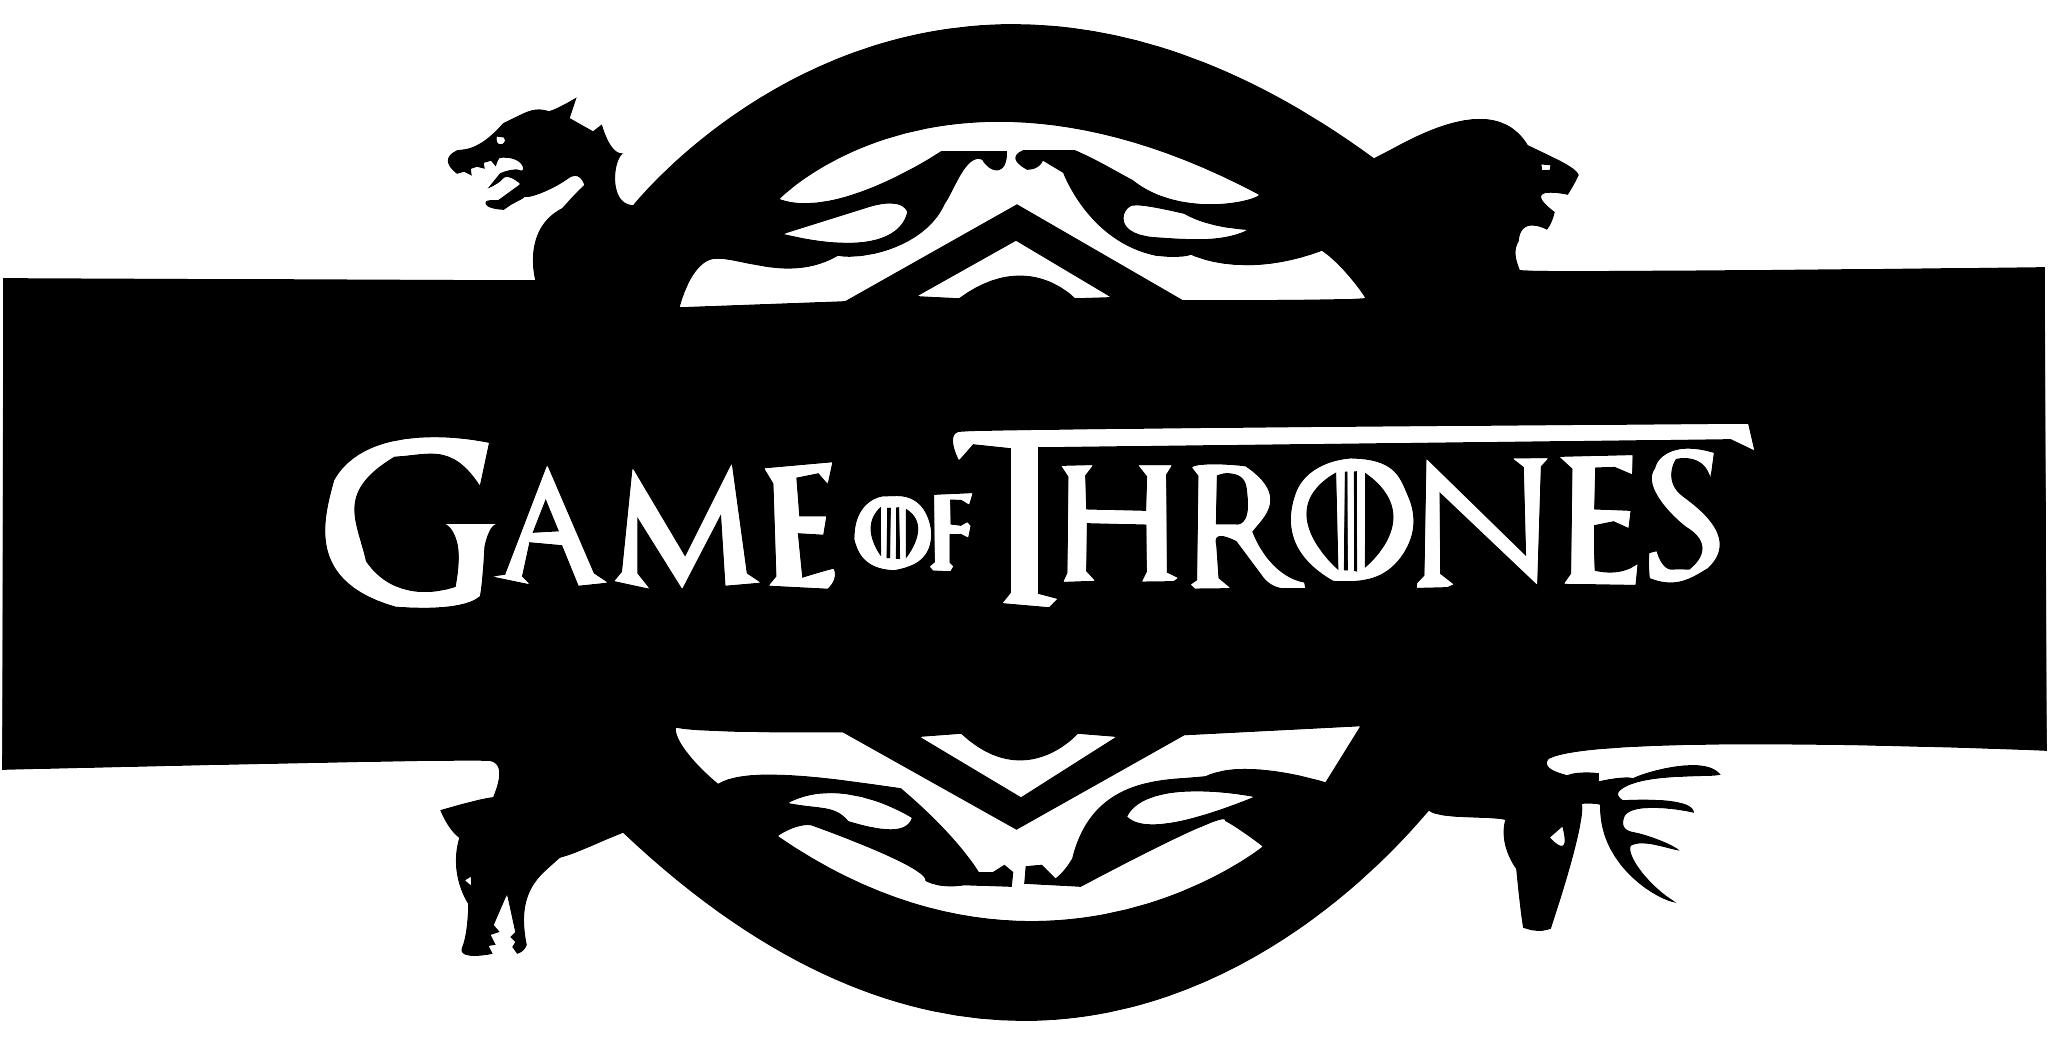 Juego de Thrones Logo imagen PNGn